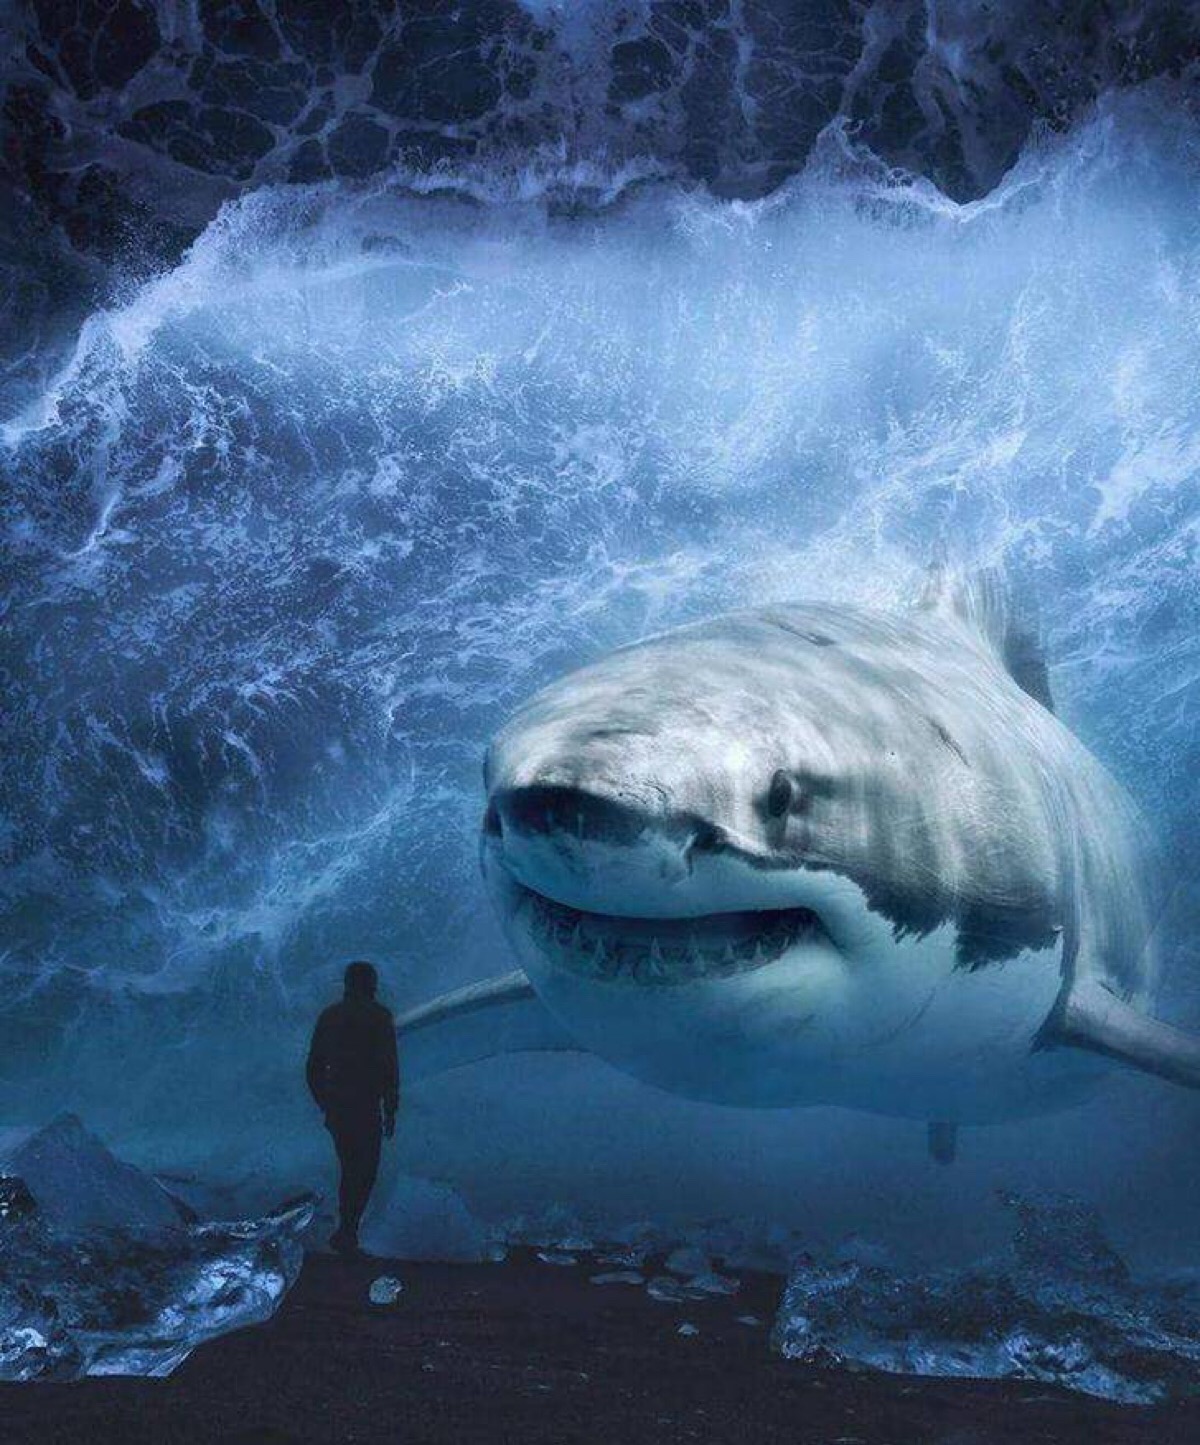 鲨鱼微信背景图霸气图片